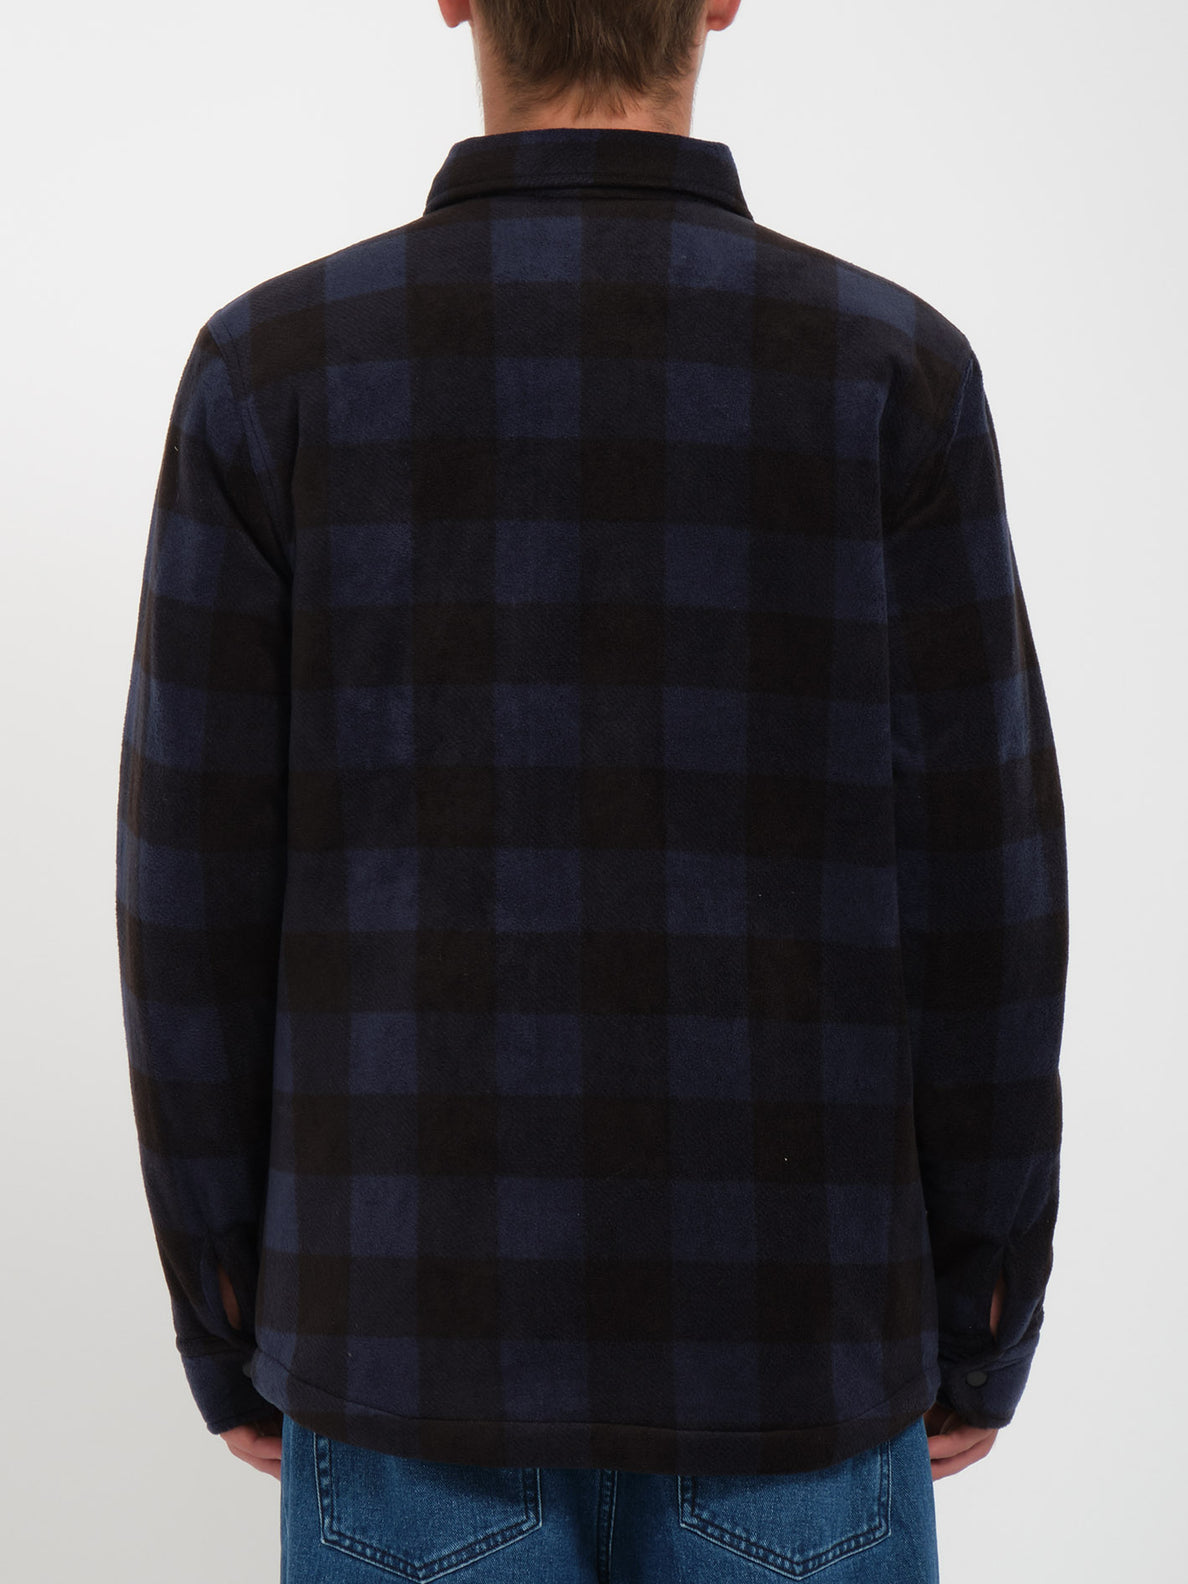 Bowered Fleece Long Sleeve Shirt - NAVY